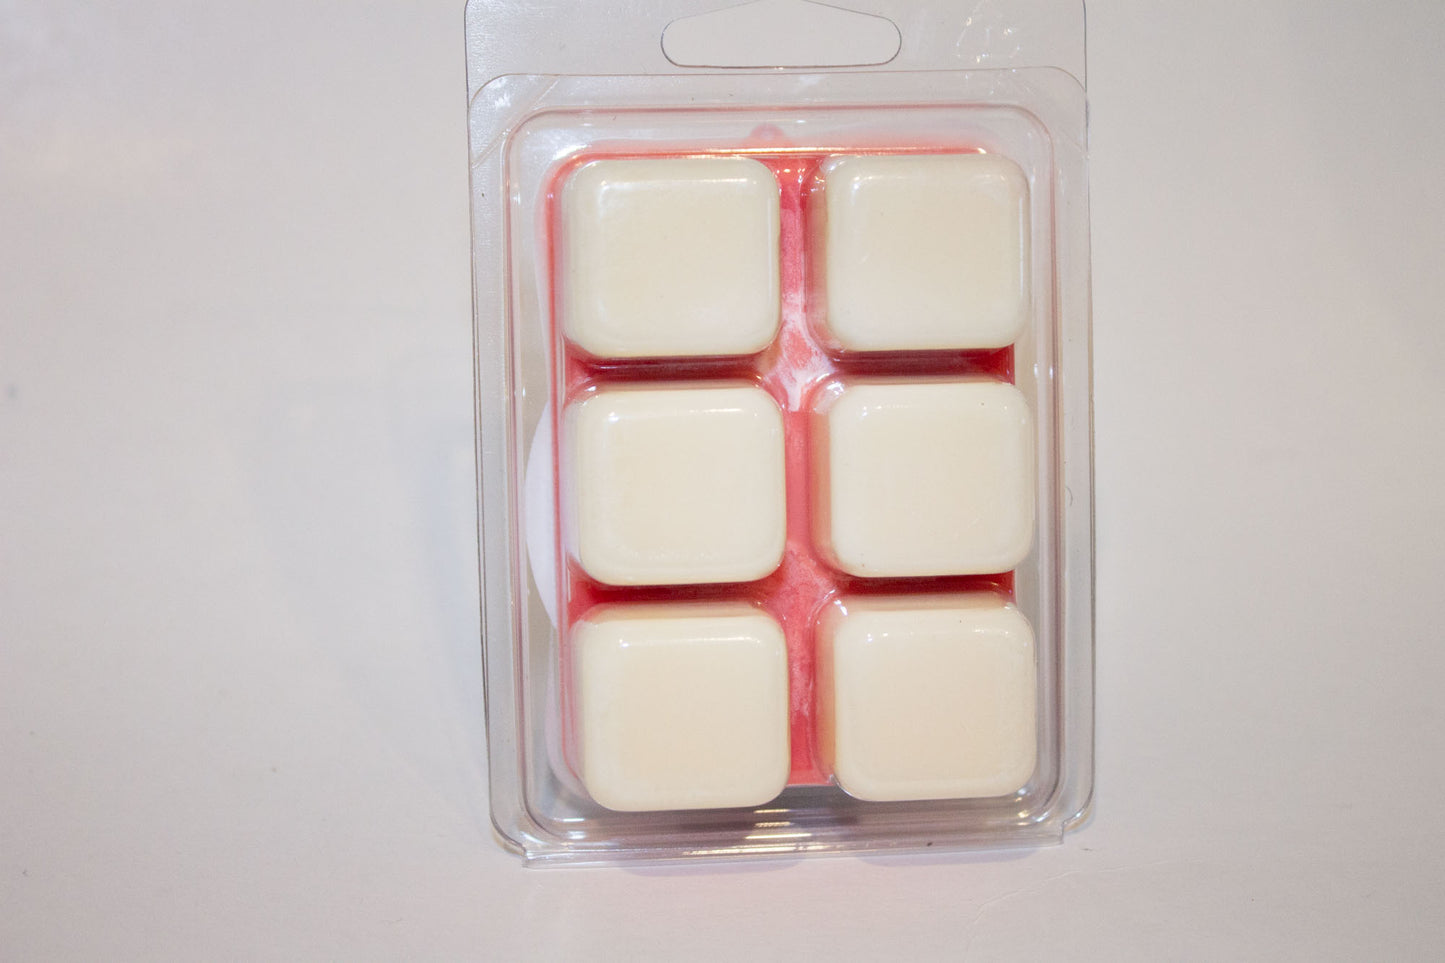 Cherry Mint Bundles!!! - 2.5oz Soy melt cubes